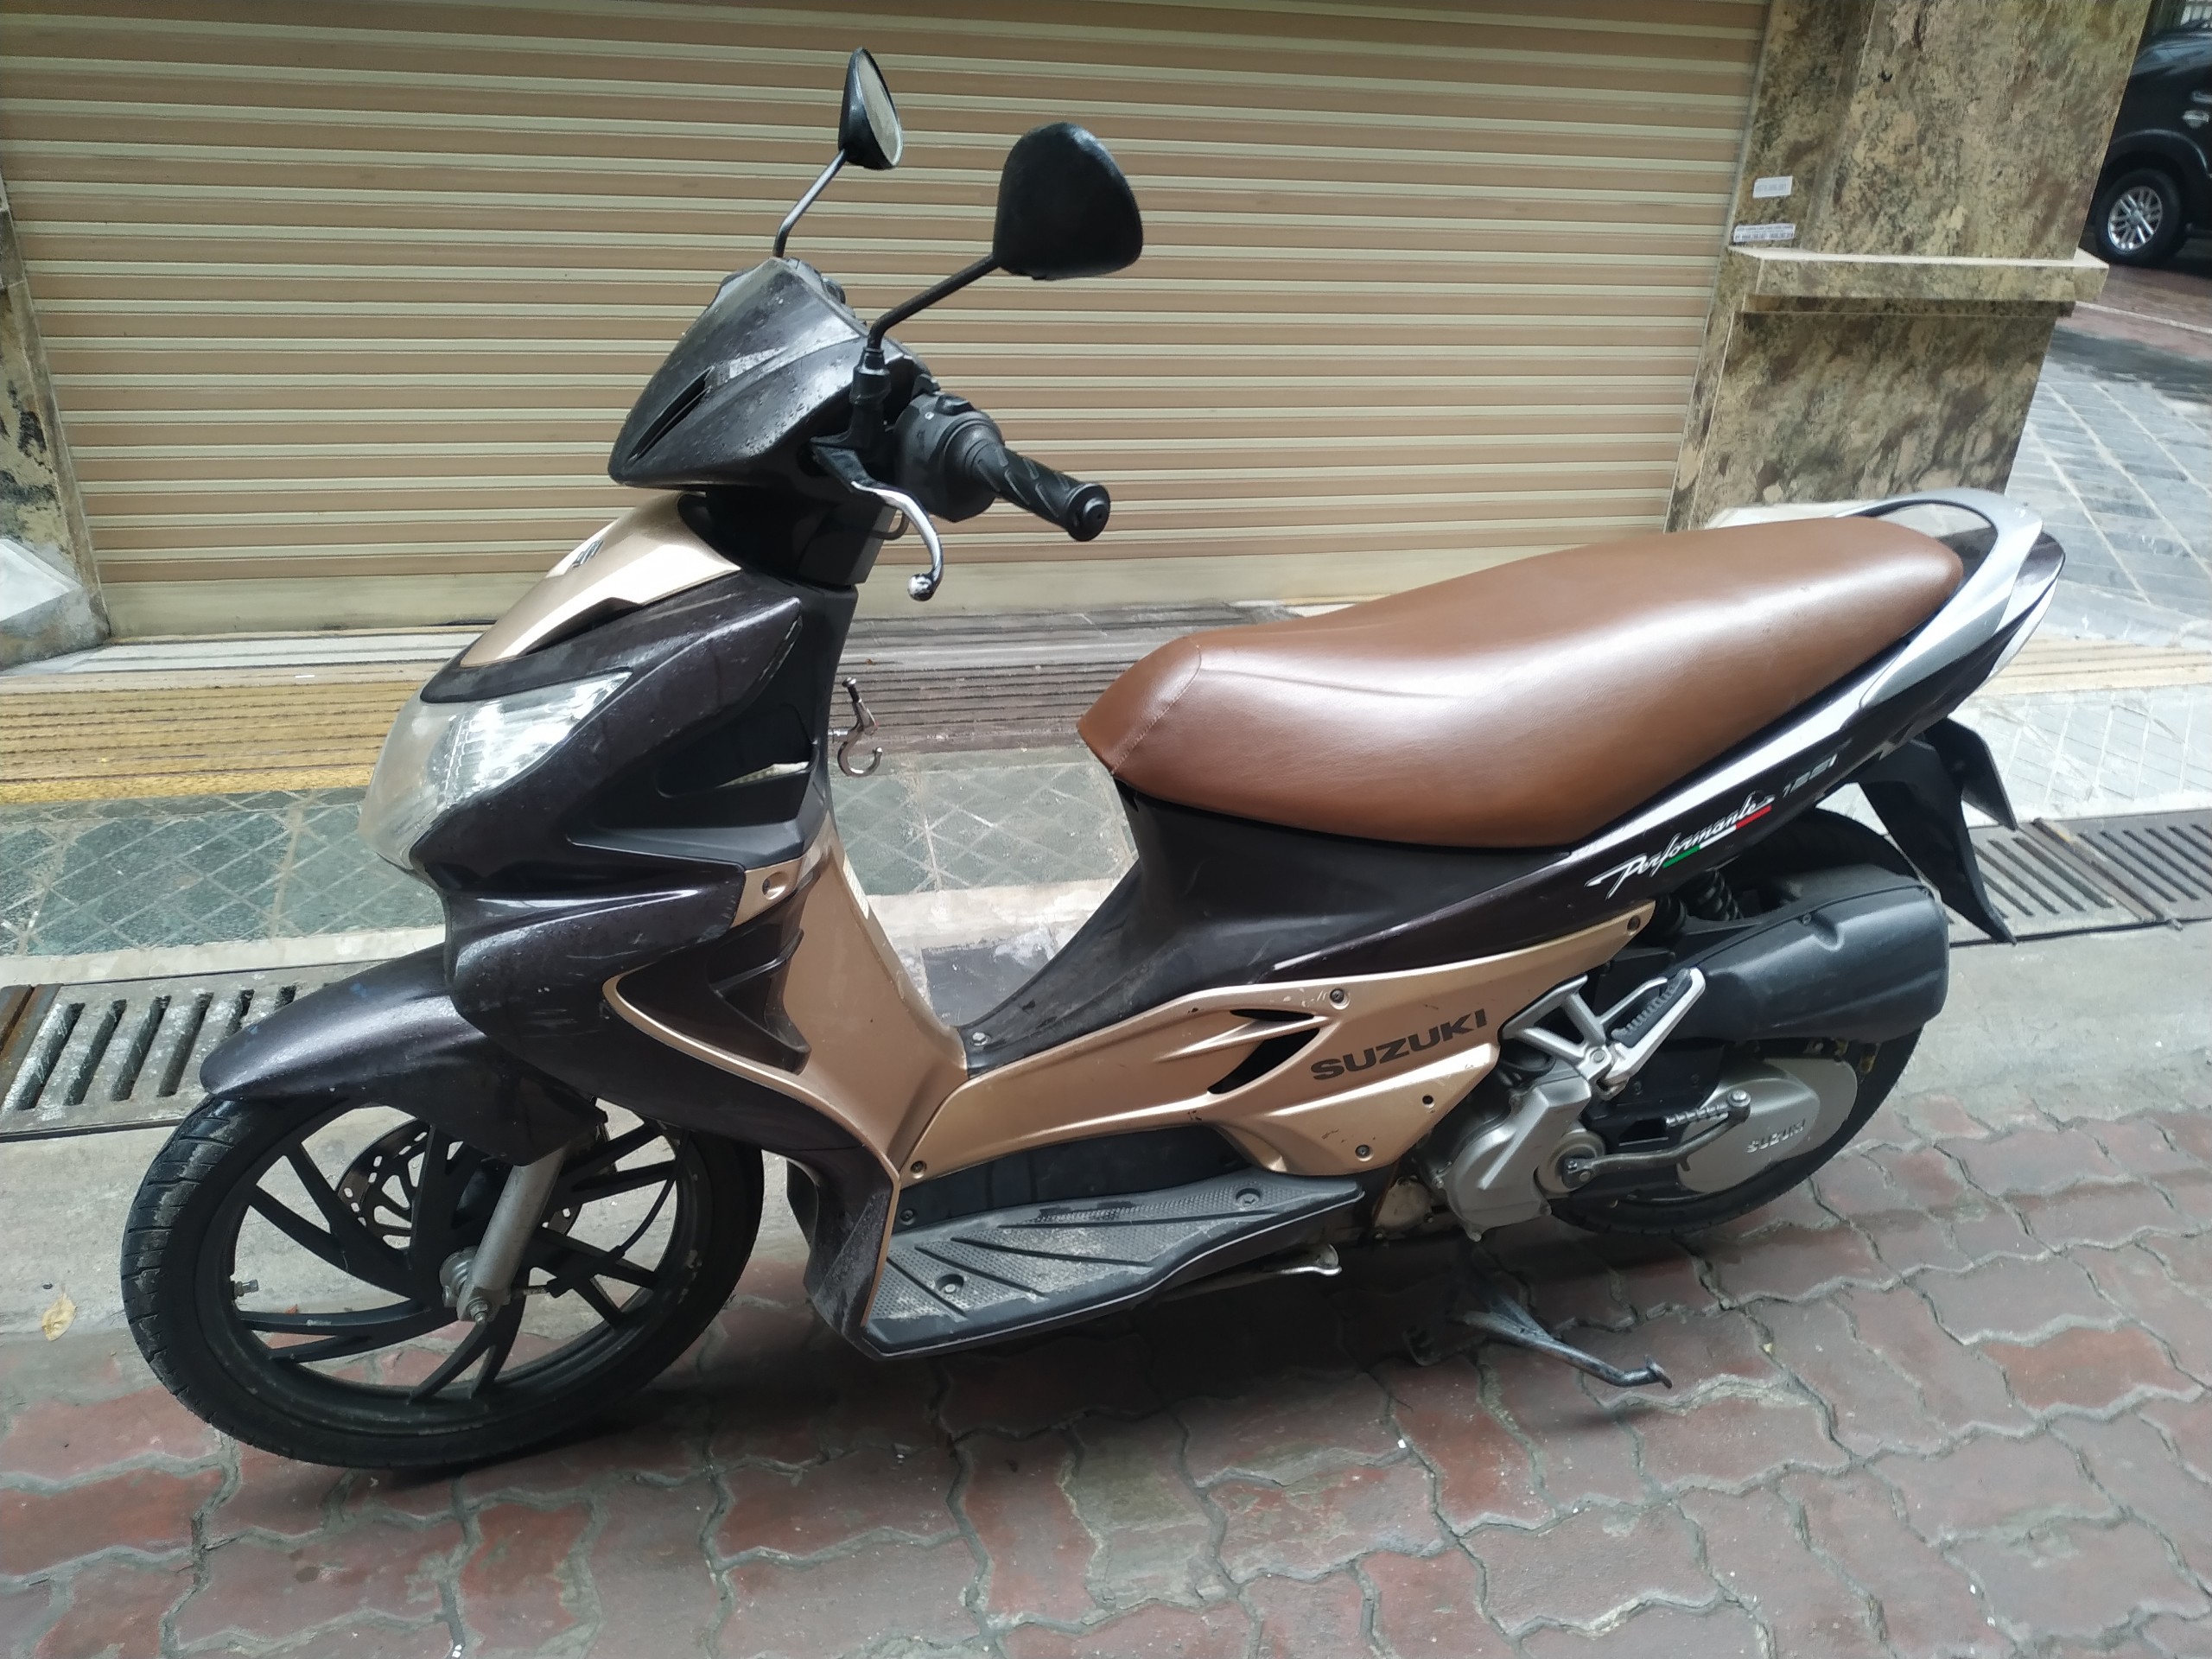 Suzuki Hayate đời 2012 màu đen BSTP  Xe  bán tại Trịnh Đông  xe cũ giá  rẻ xe máy cũ giá rẻ xe ga giá rẻ xe tay ga giá